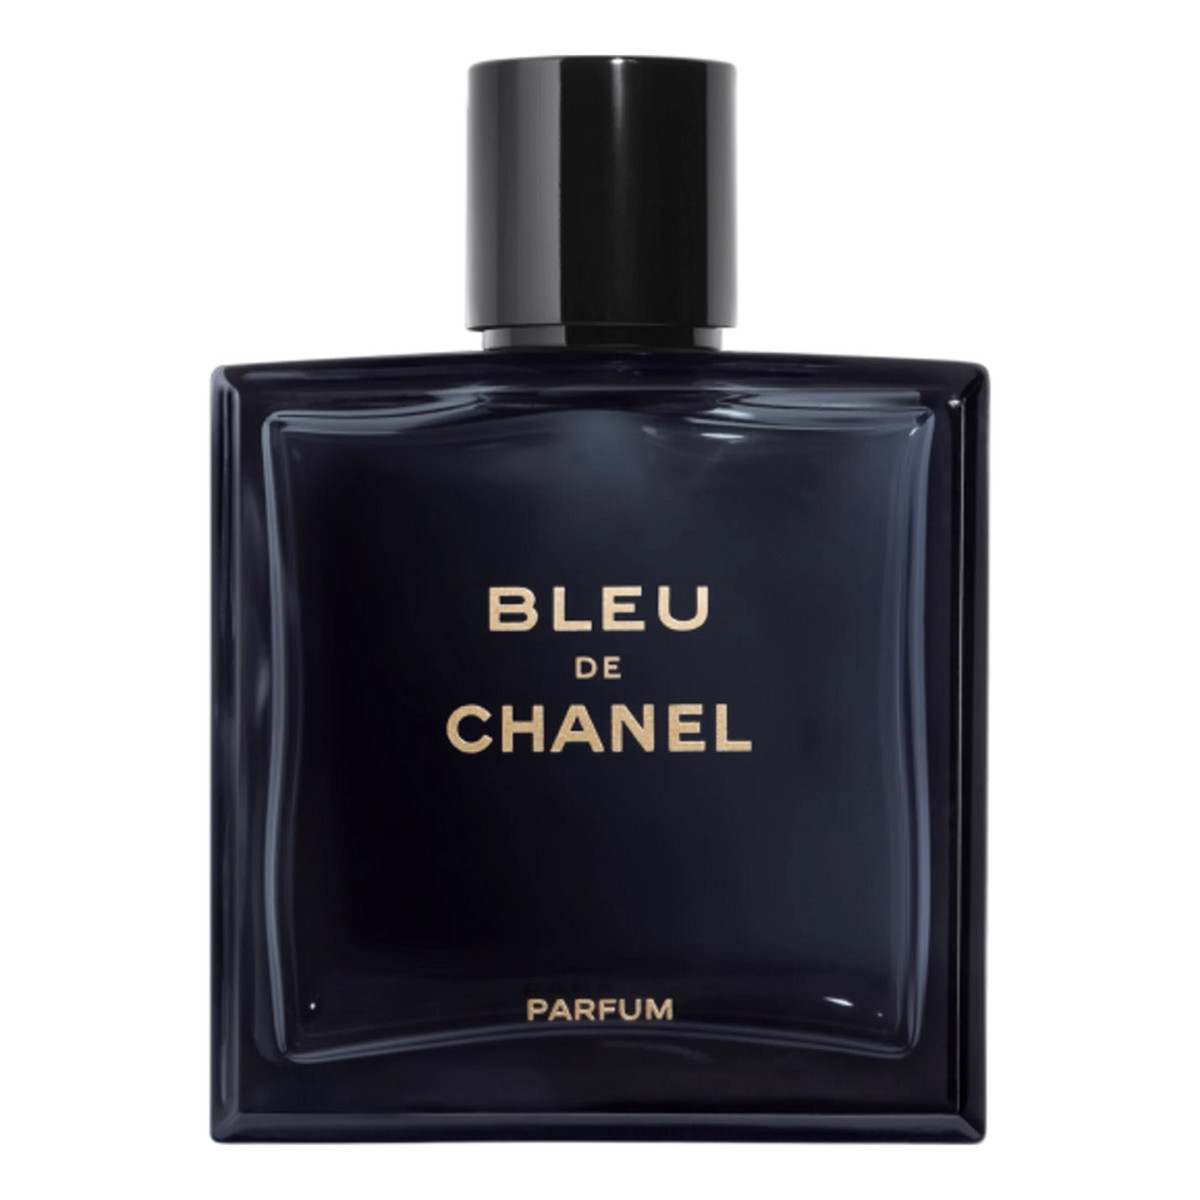 Chanel Bleu de Chanel Perfumy spray 50ml